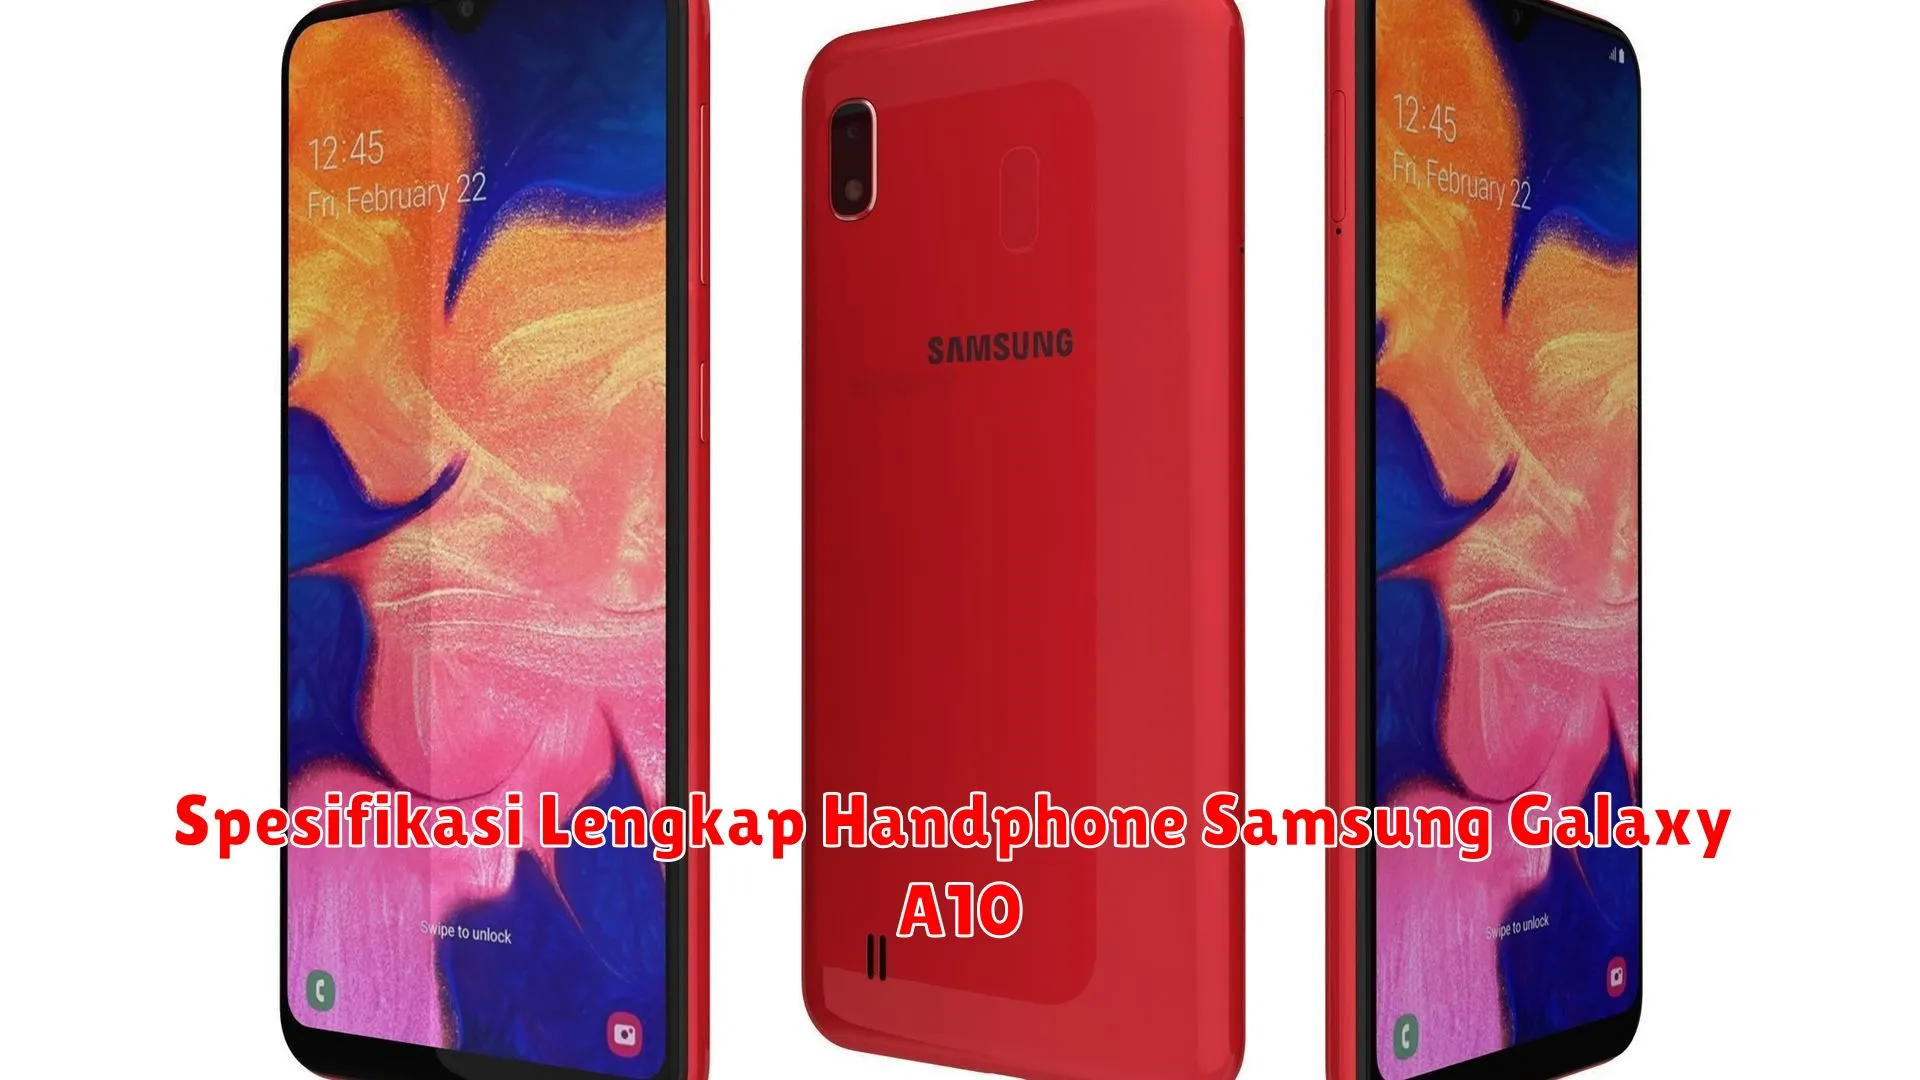 Spesifikasi Lengkap Handphone Samsung Galaxy A10